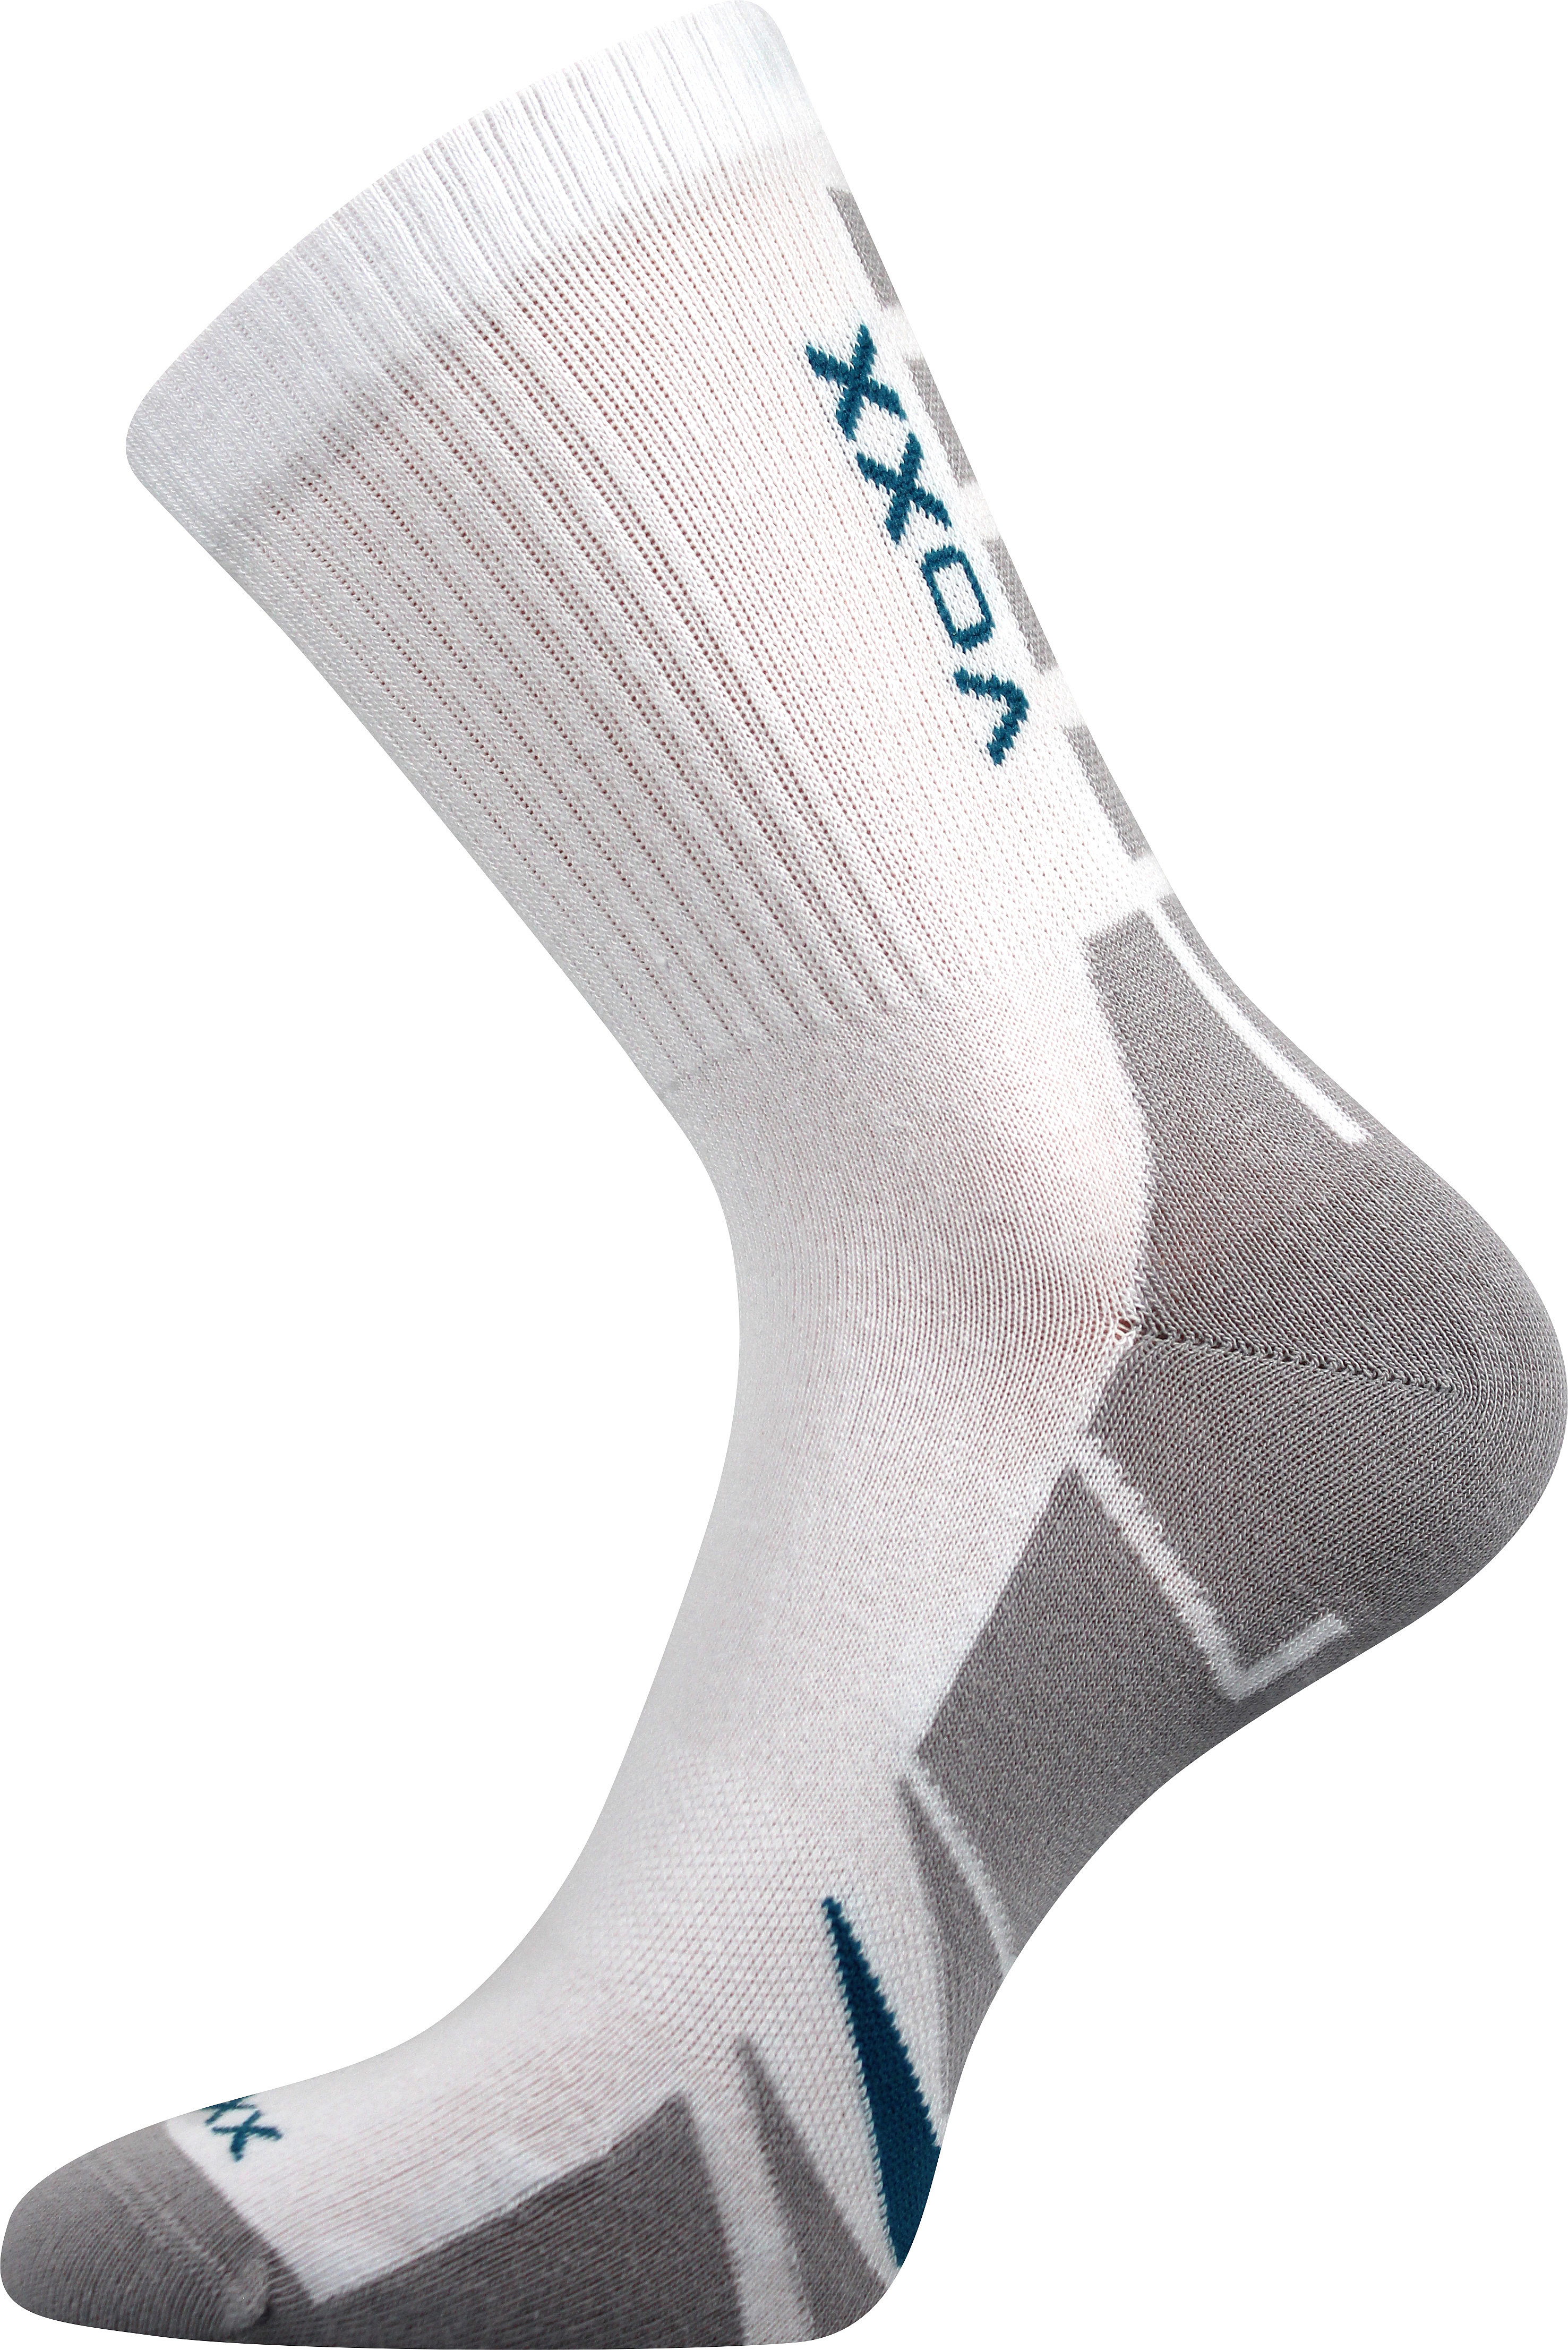 Ponožky sportovní Voxx Hermes - bílé-šedé, 43-46